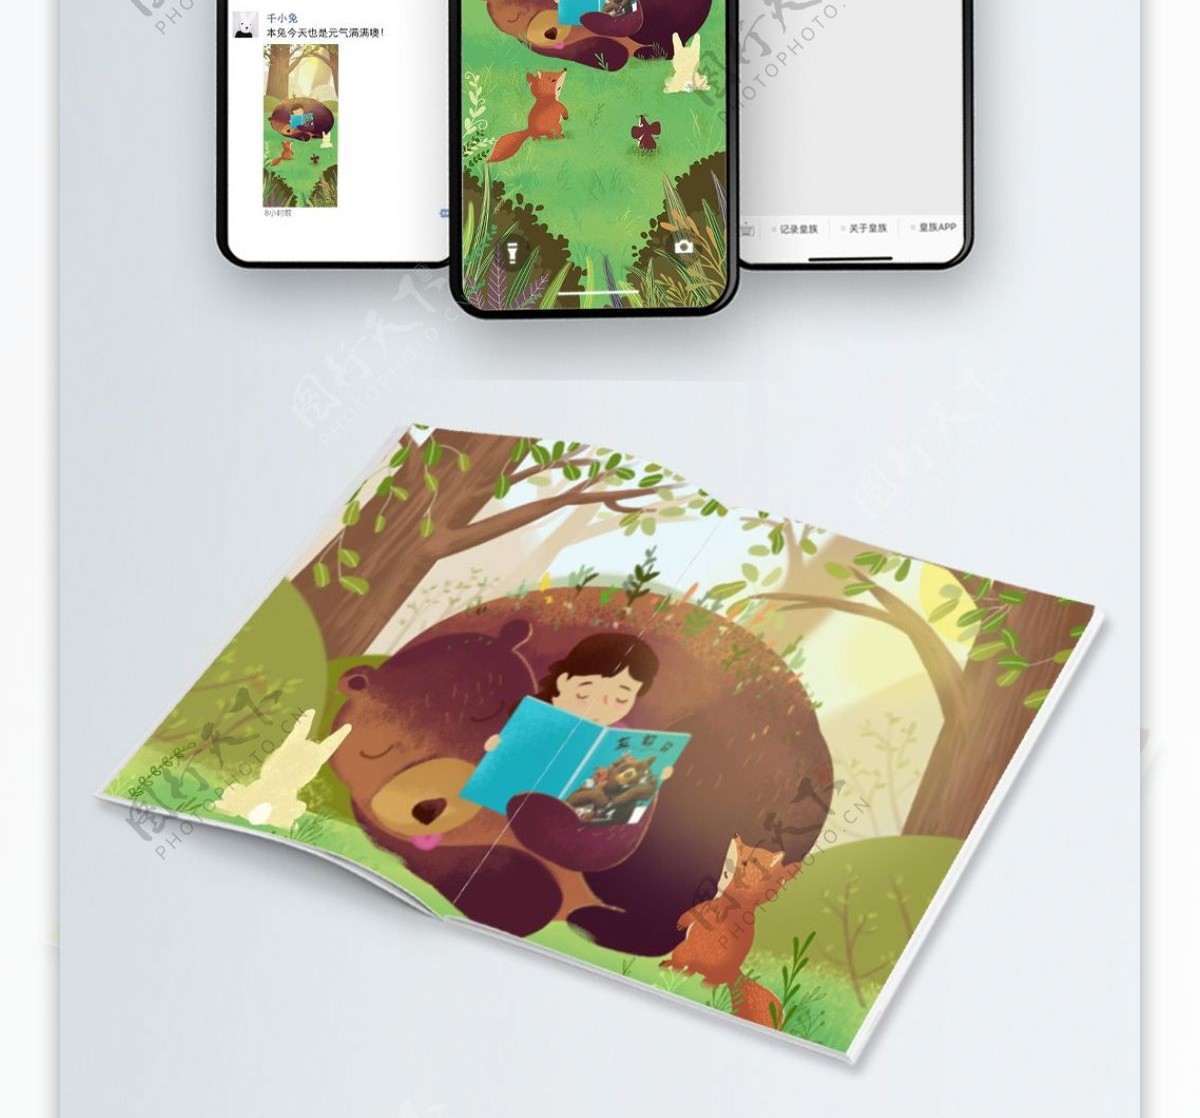 原创插画夏天处夏儿童与动物森林树下看书